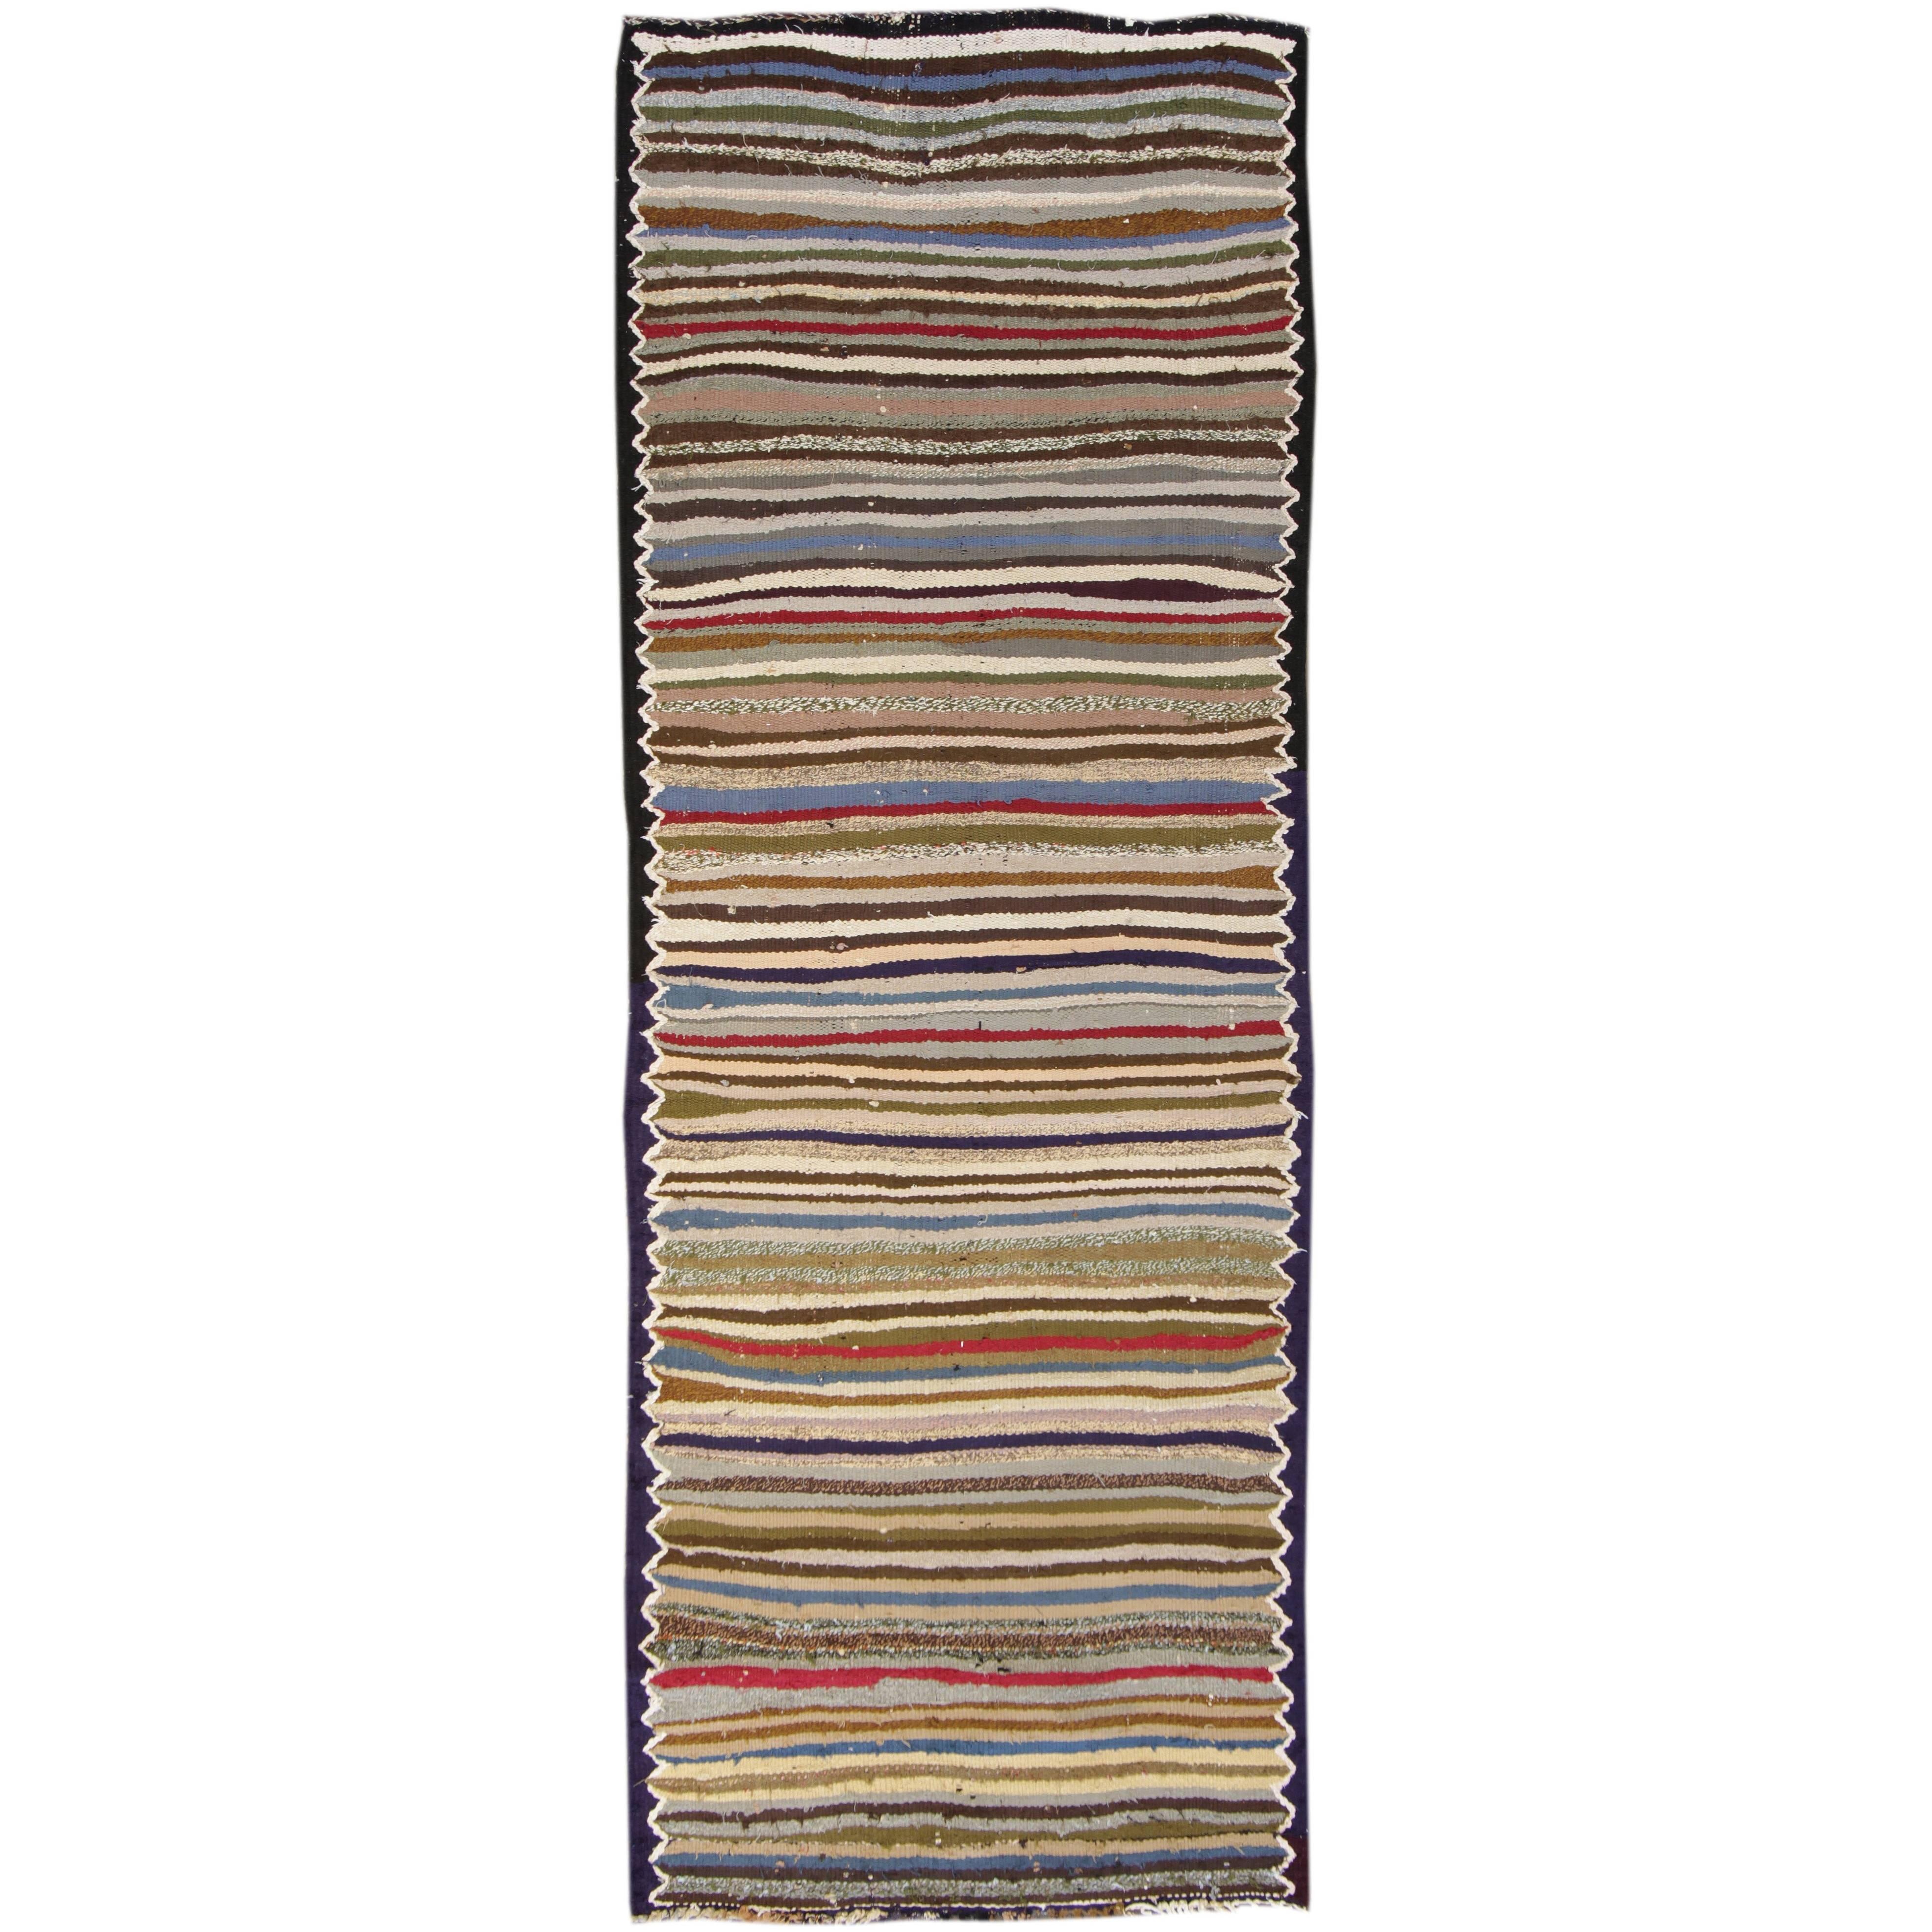 Schön gestalteter persischer Kelim-Teppich im Vintage-Stil